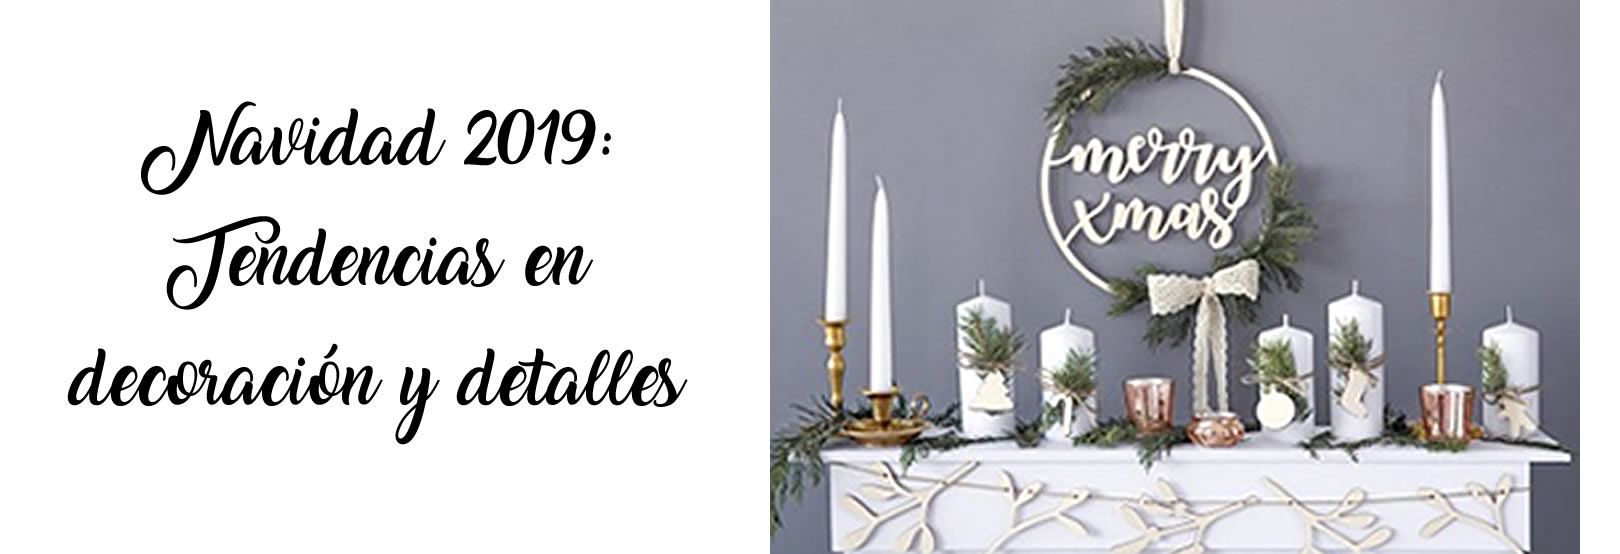 Navidad 2019: Tendencia en decoración y detalles